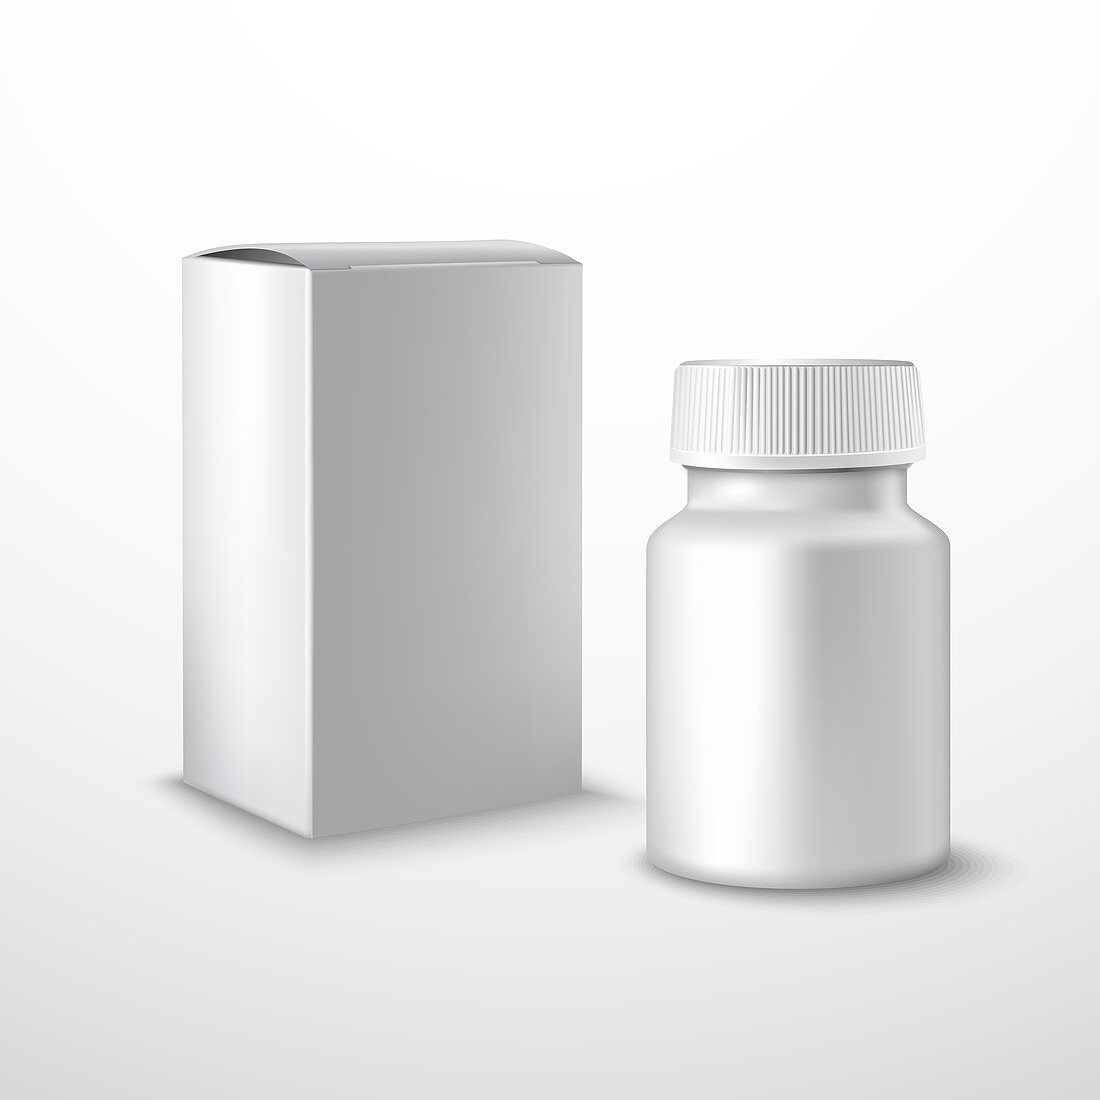 Drug packaging, illustration